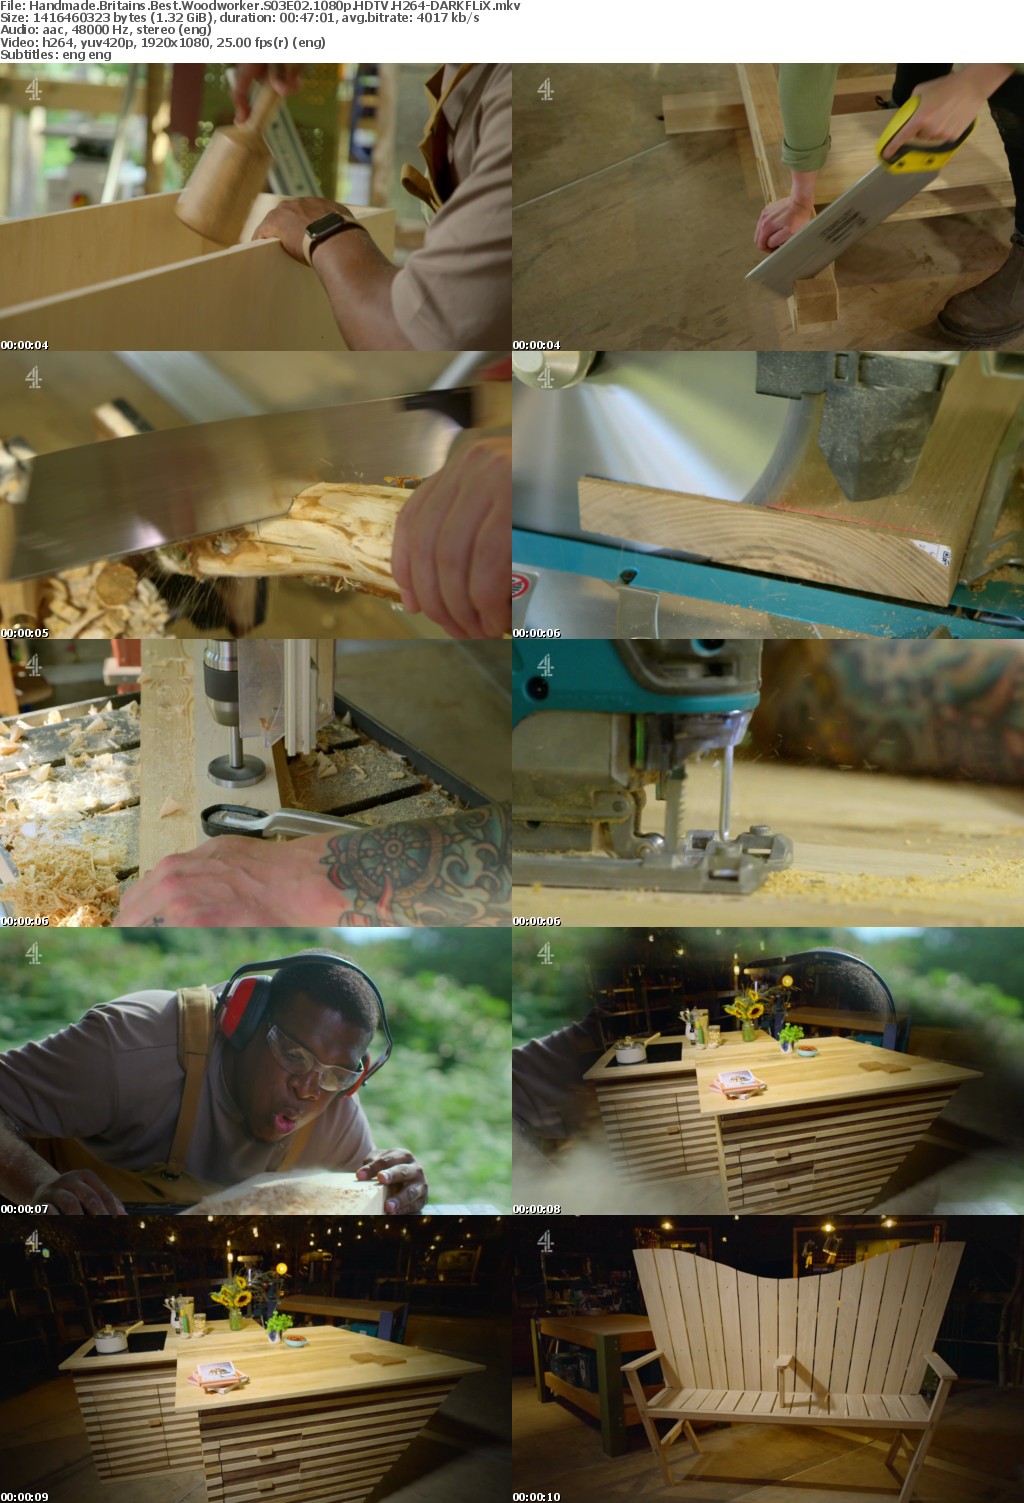 Handmade Britains Best Woodworker S03E02 1080p HDTV H264-DARKFLiX